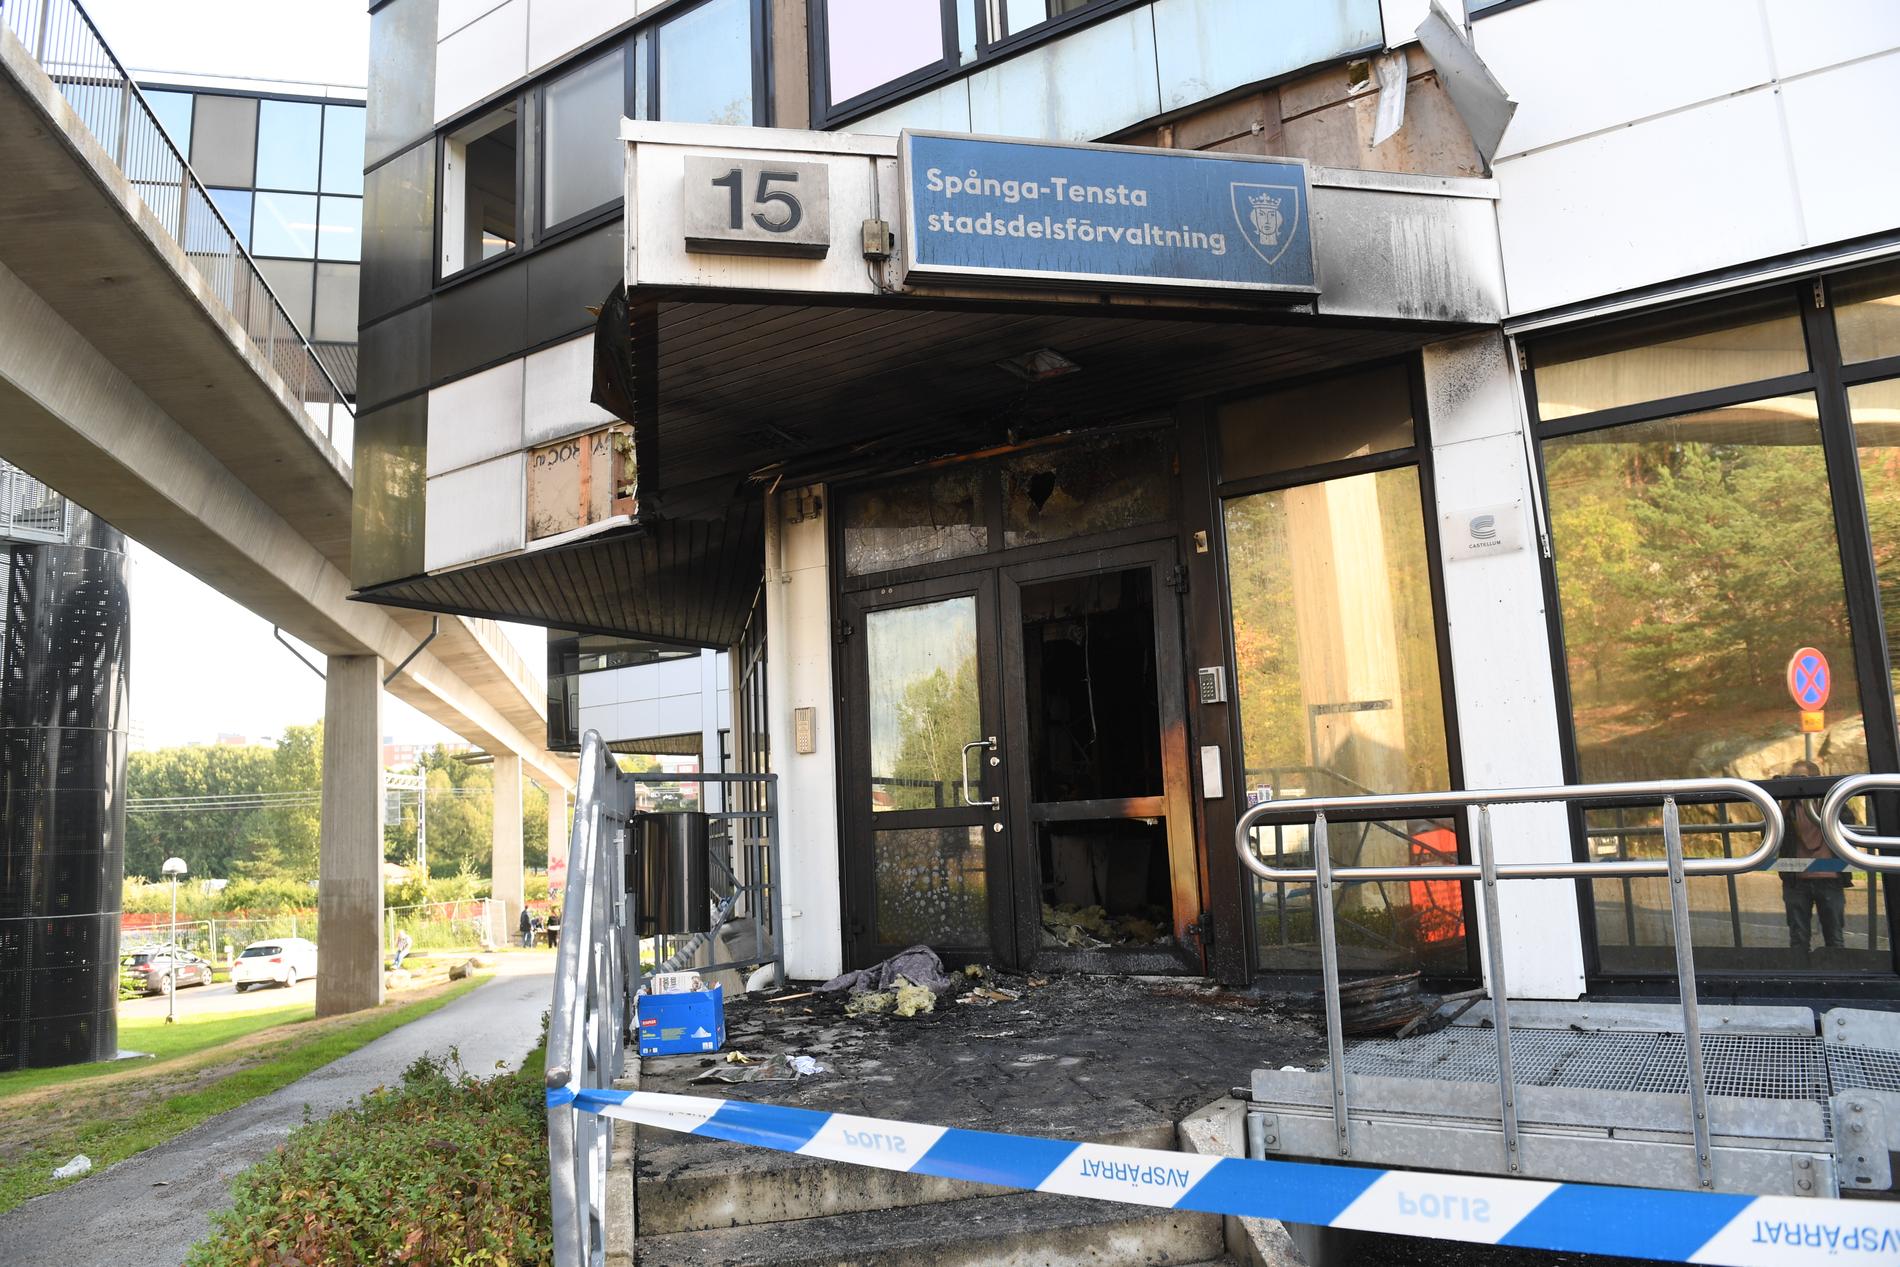 Brinnande däck placerades i anslutning till entrén på medborgarkontoret i Spånga-Tensta. Det är en av en rad attacker mot kontoret. Arkivbild.